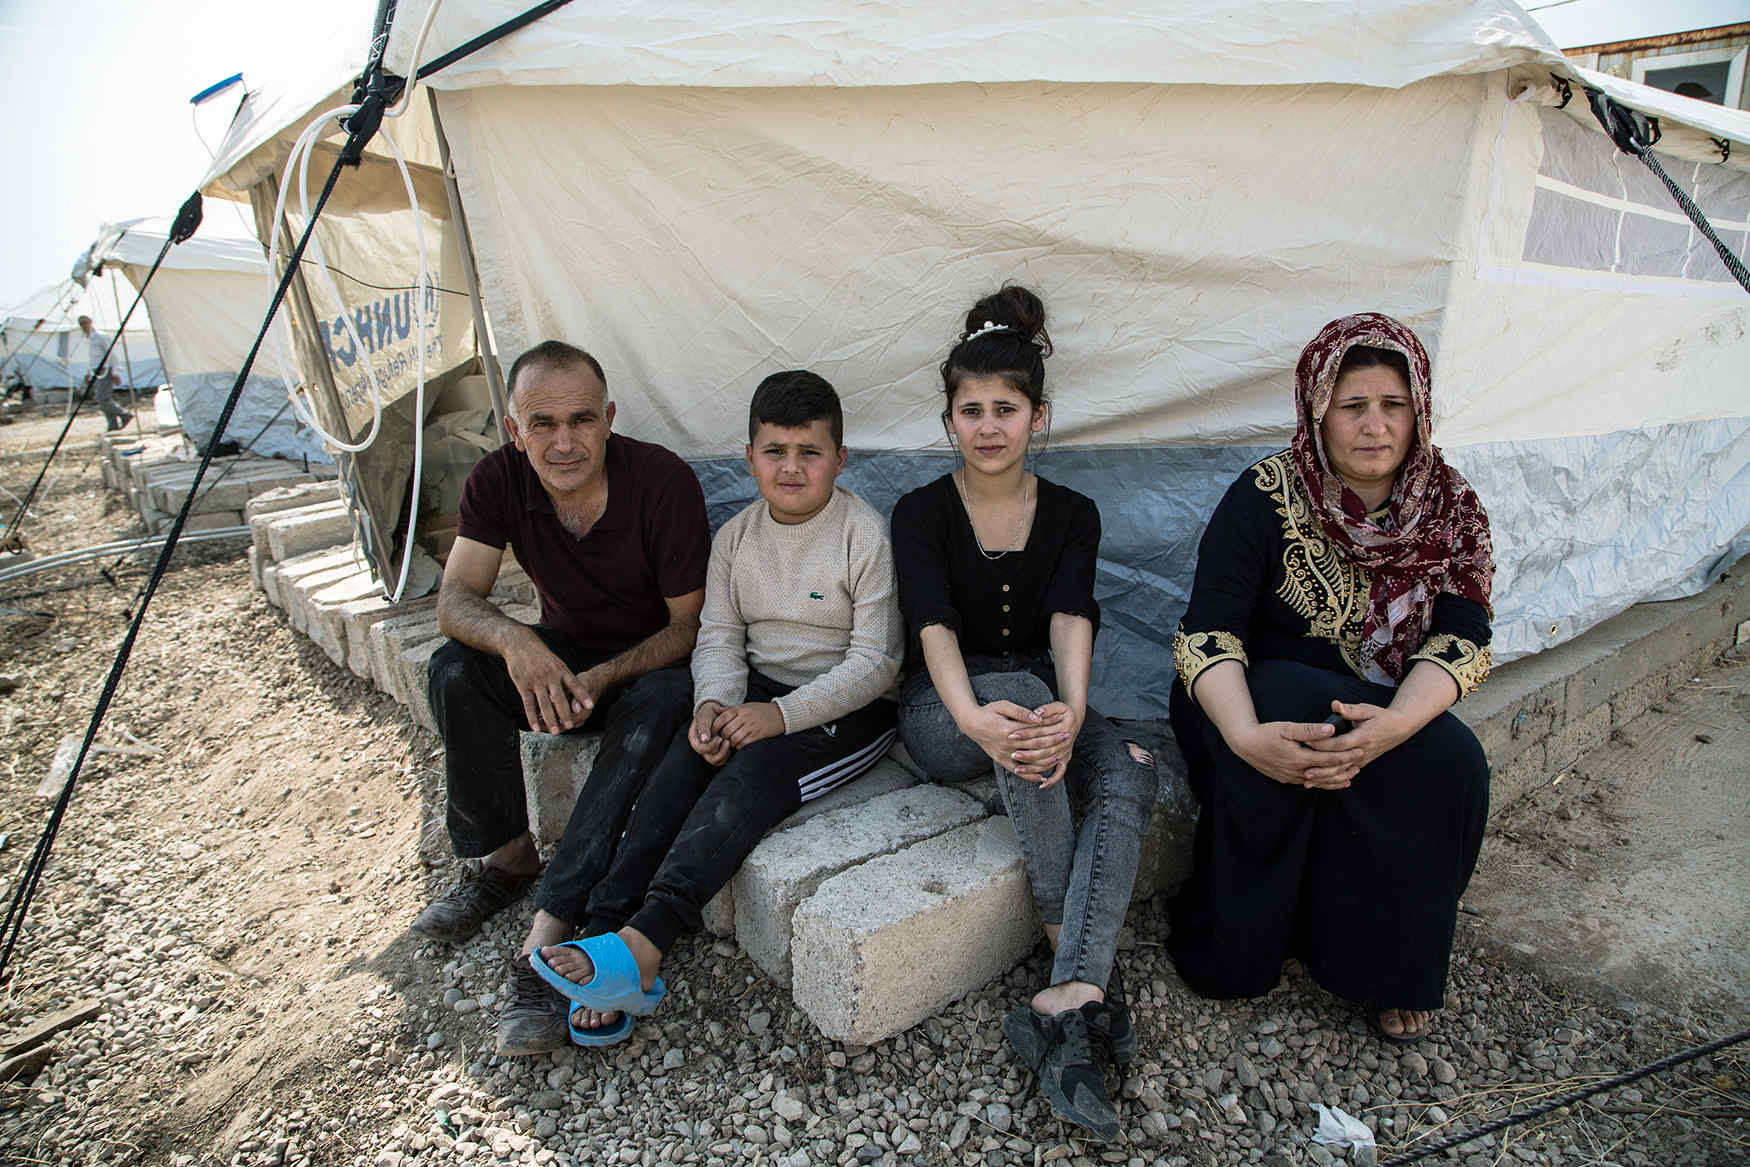 De eerste Syrische vluchtelingen in Irak: ‘Dit is écht onze oorlog niet’